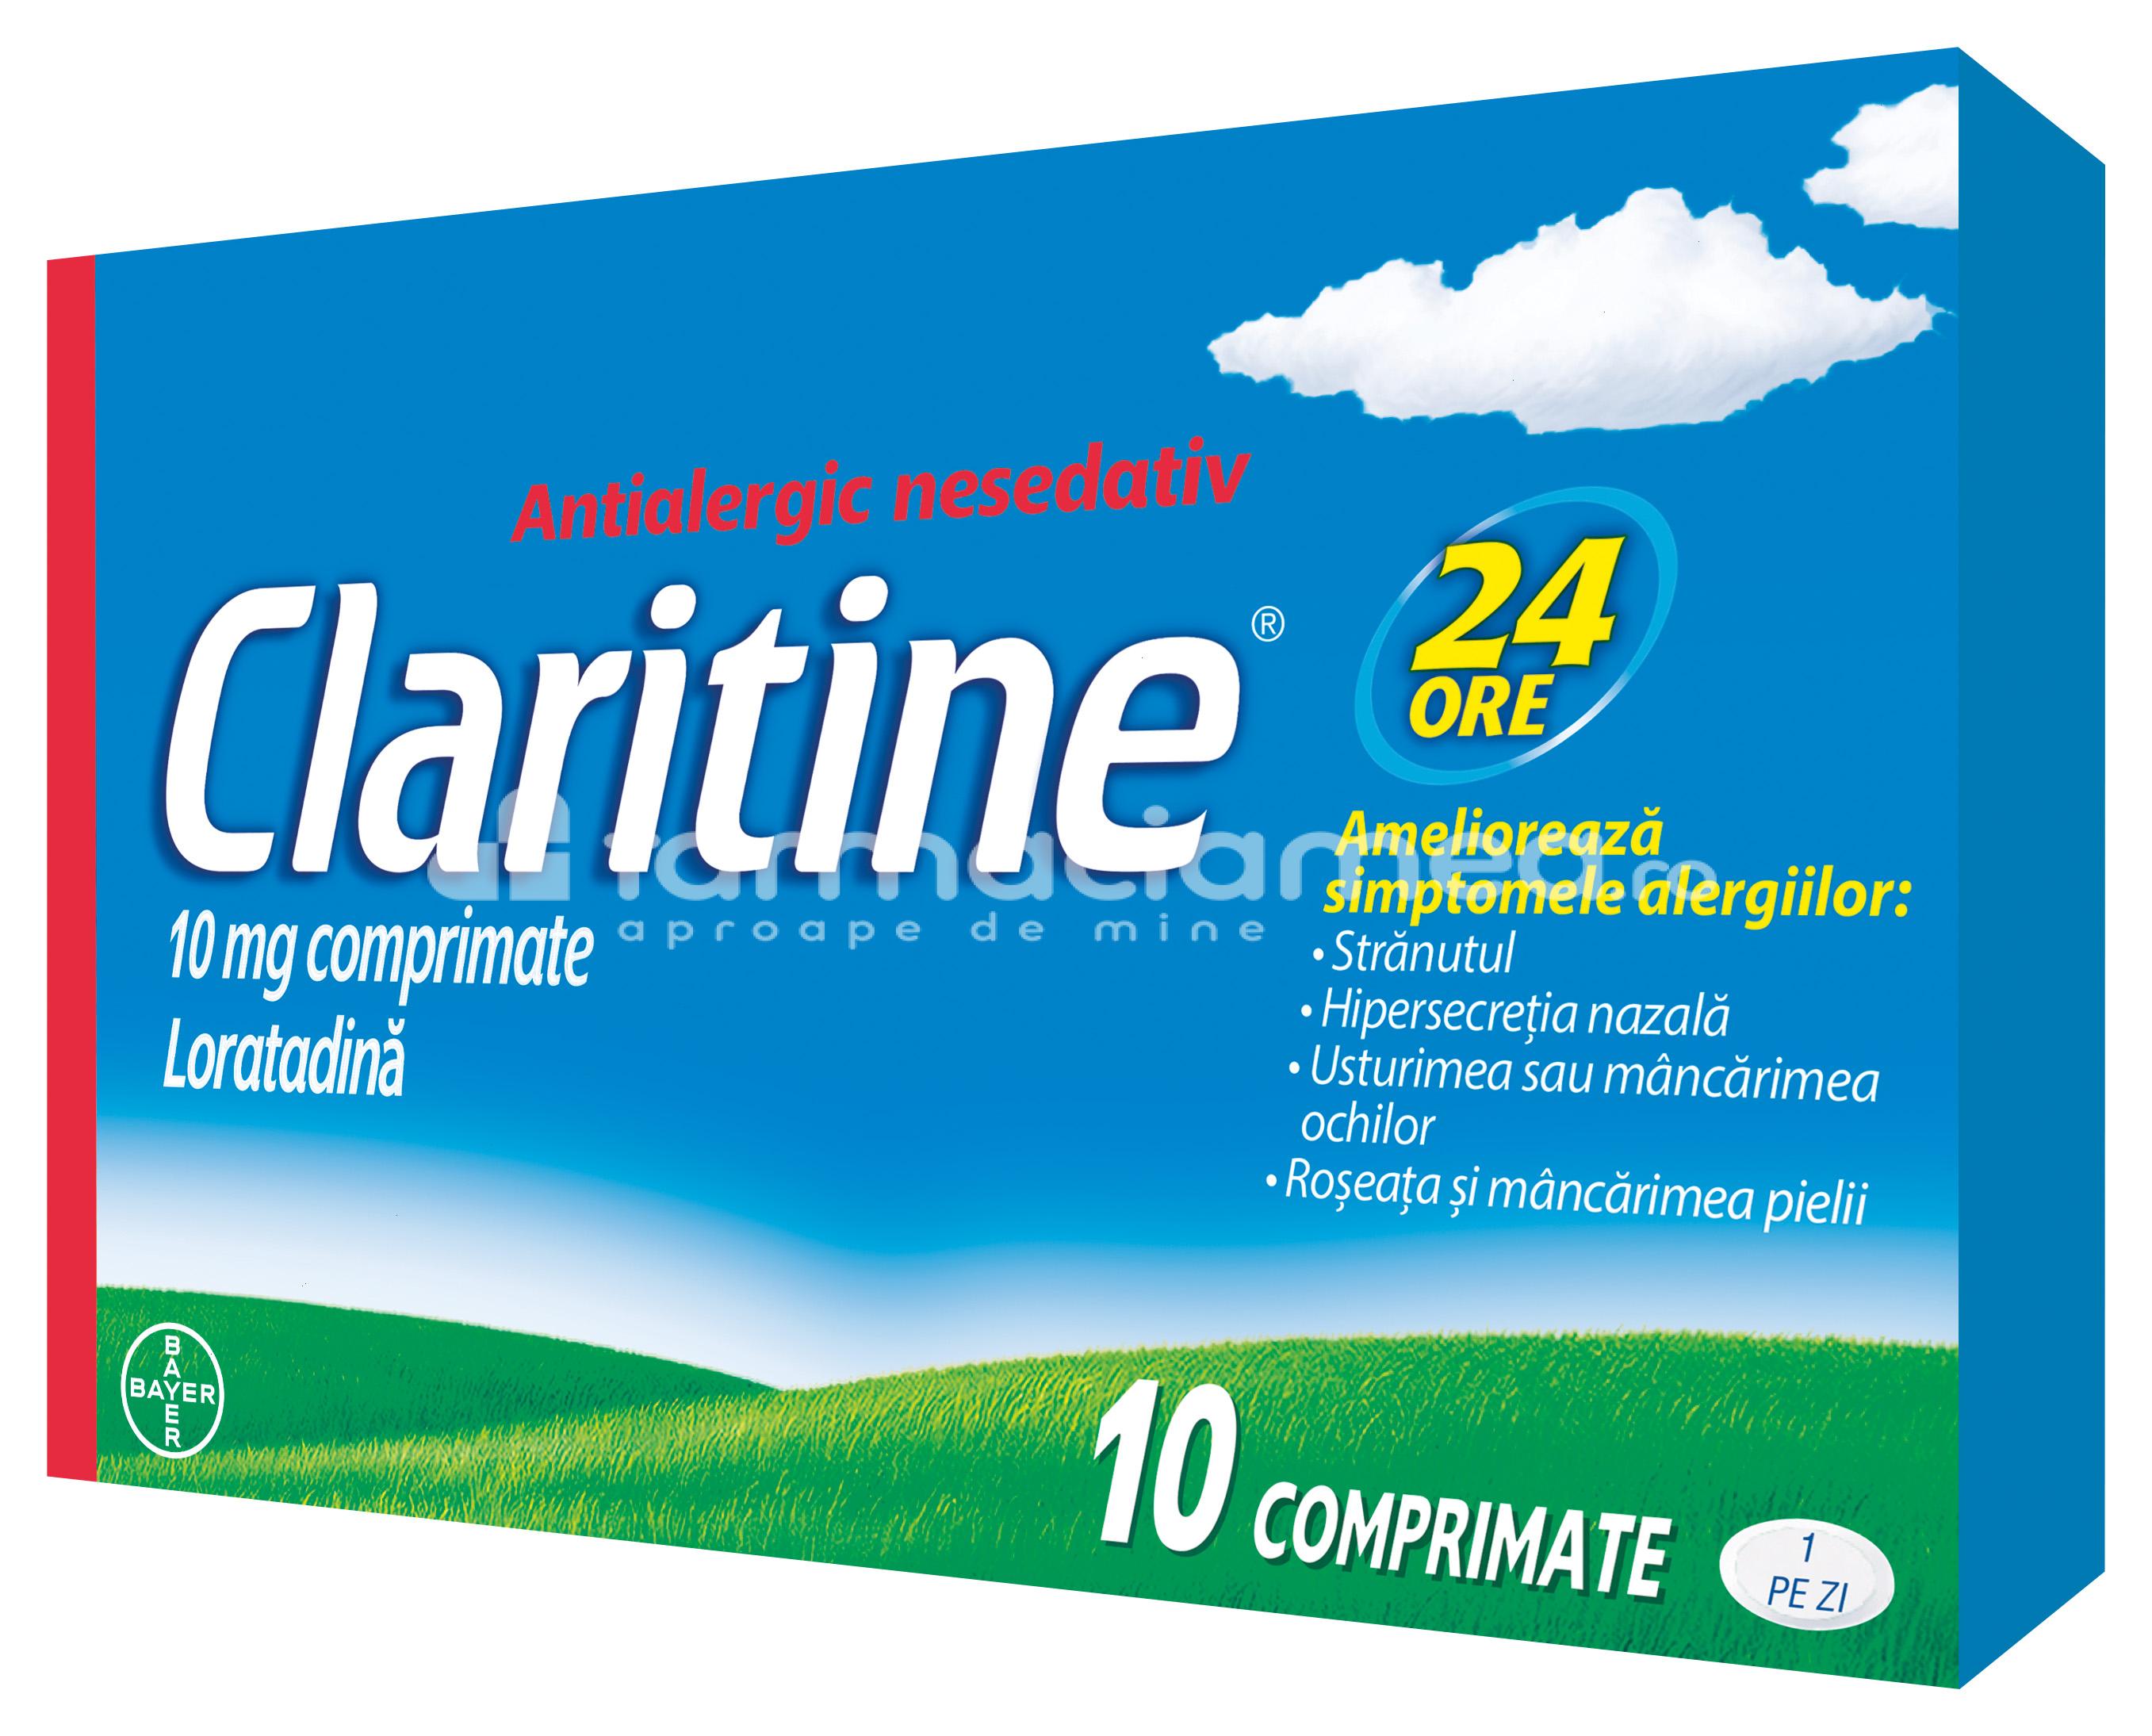 Alergii OTC - Claritine 10 mg, contine loratadina, cu efect antihistaminic, indicat in reducerea simptomelor alergiei, de la 12 ani, 10 de comprimate, Bayer, farmaciamea.ro